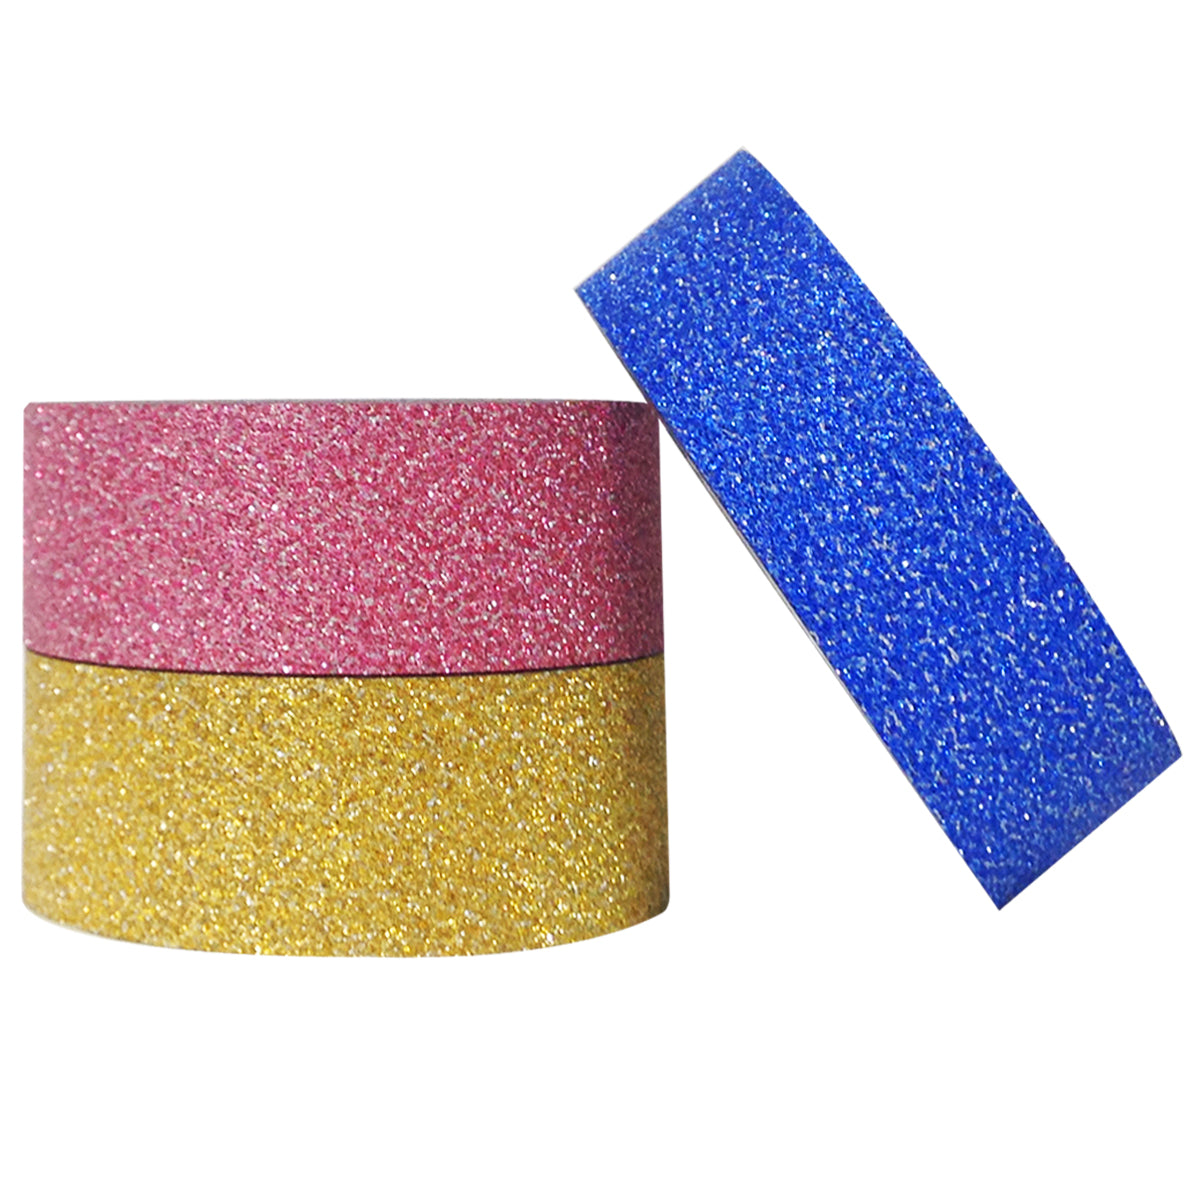 Wrapables Glamorous Glitter Japanese Washi Masking Tape (Set of 3)